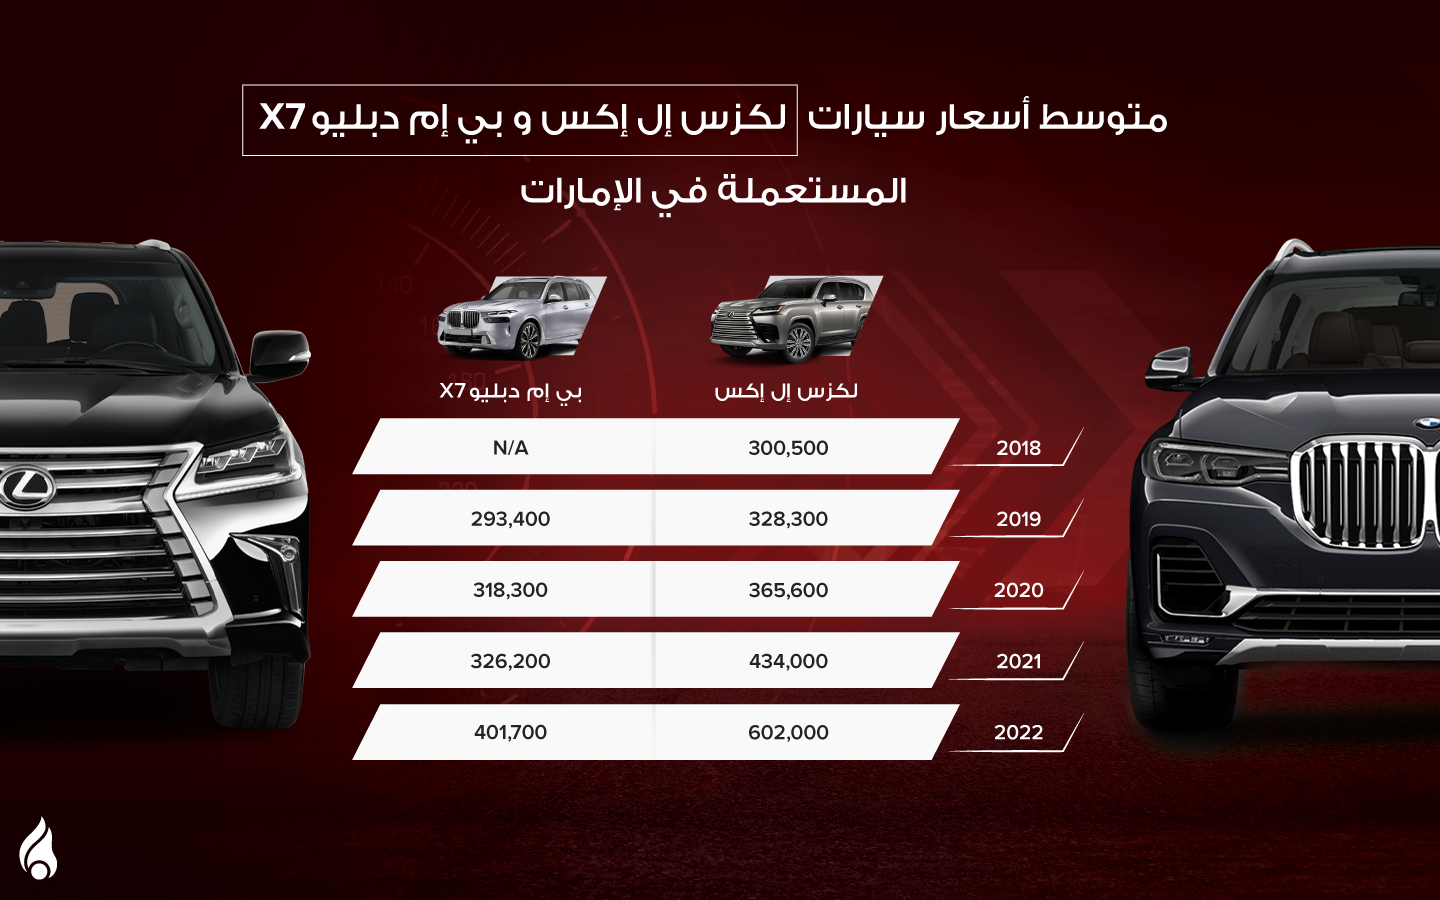 أسعار سيارتي لكزس lx وبي ام دبليو x7 المستعملة في الإمارات